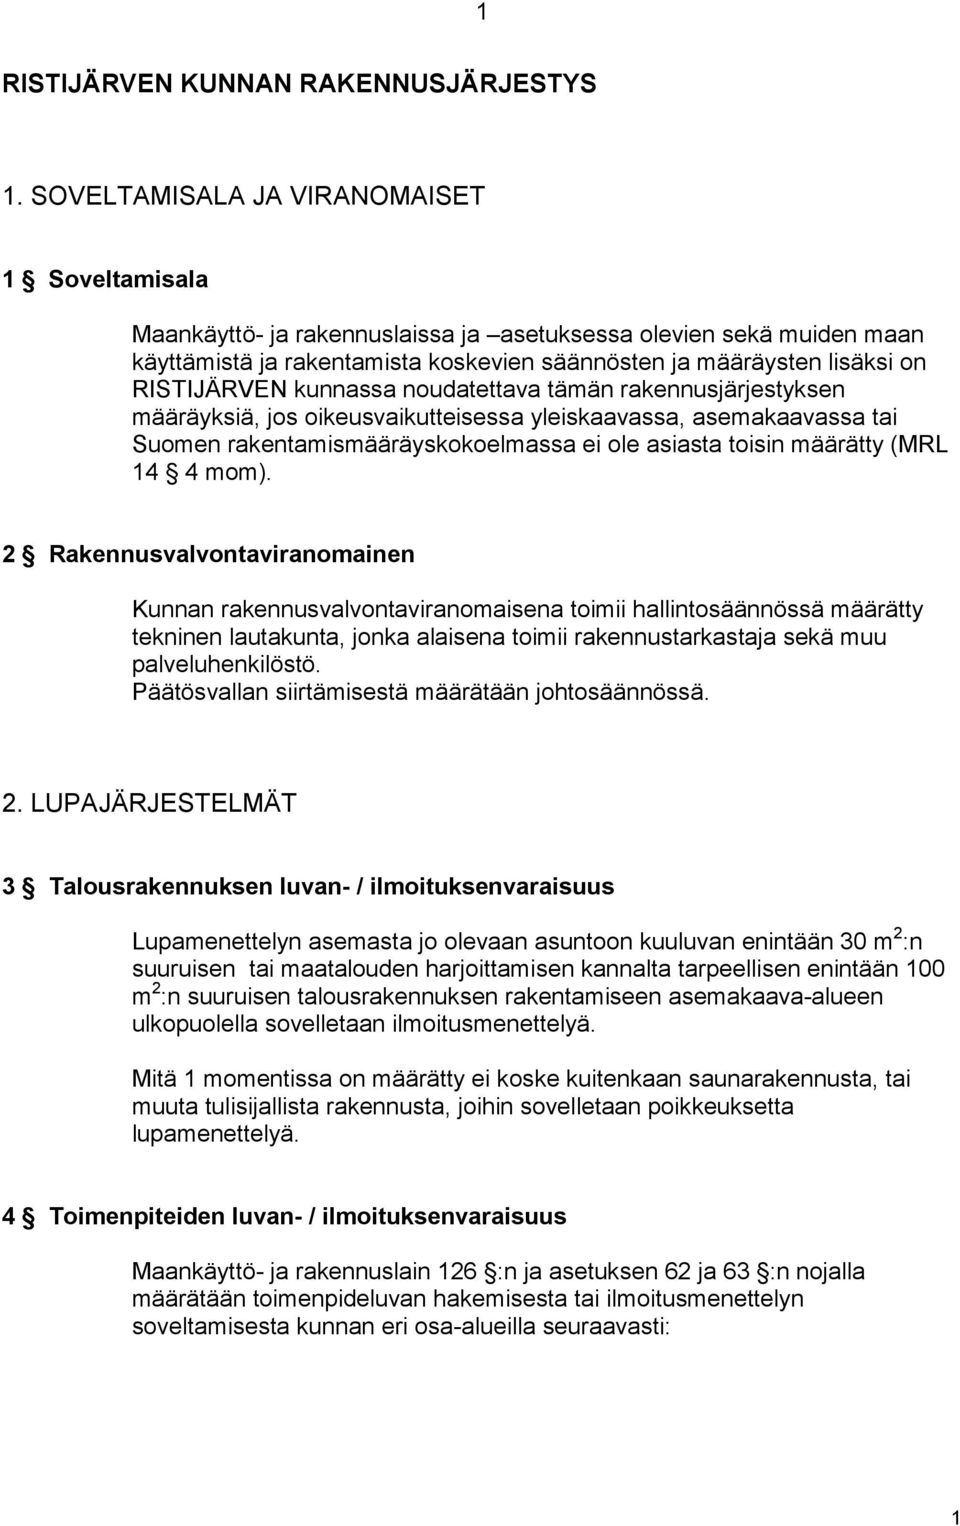 RISTIJÄRVEN kunnassa noudatettava tämän rakennusjärjestyksen määräyksiä, jos oikeusvaikutteisessa yleiskaavassa, asemakaavassa tai Suomen rakentamismääräyskokoelmassa ei ole asiasta toisin määrätty